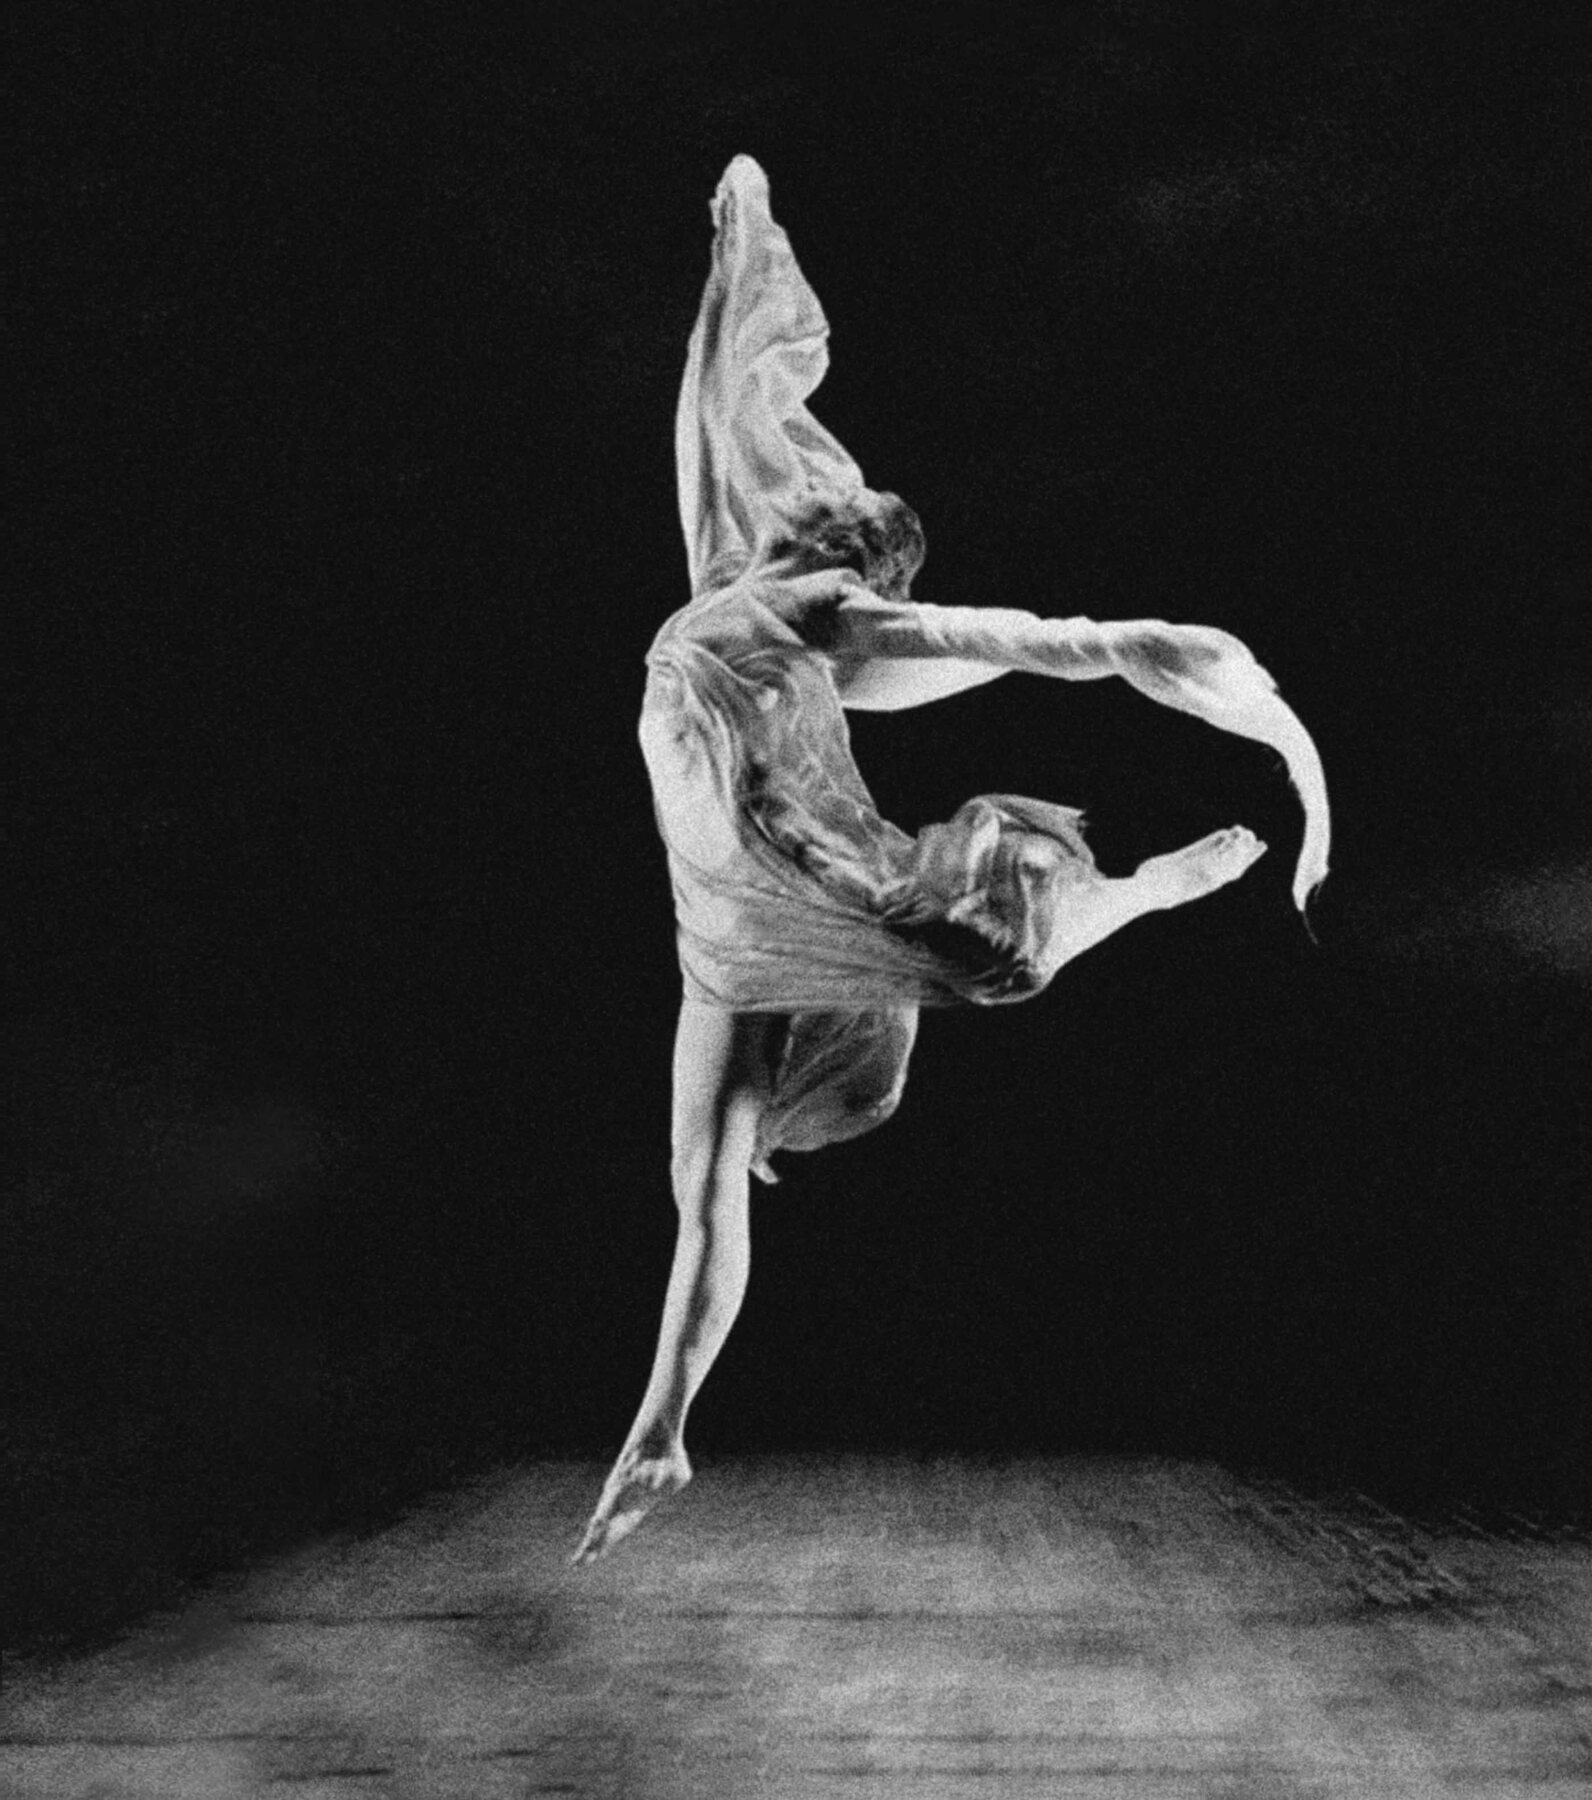 Fotografia em preto e branco. Mulher em movimento de dança no palco. Ela tem cabelo médio preso, usa um vestido esvoaçante e está descalça, saltando no ar, com uma das pernas dobrada para trás, os braços abertos e a cabeça inclinada para trás.